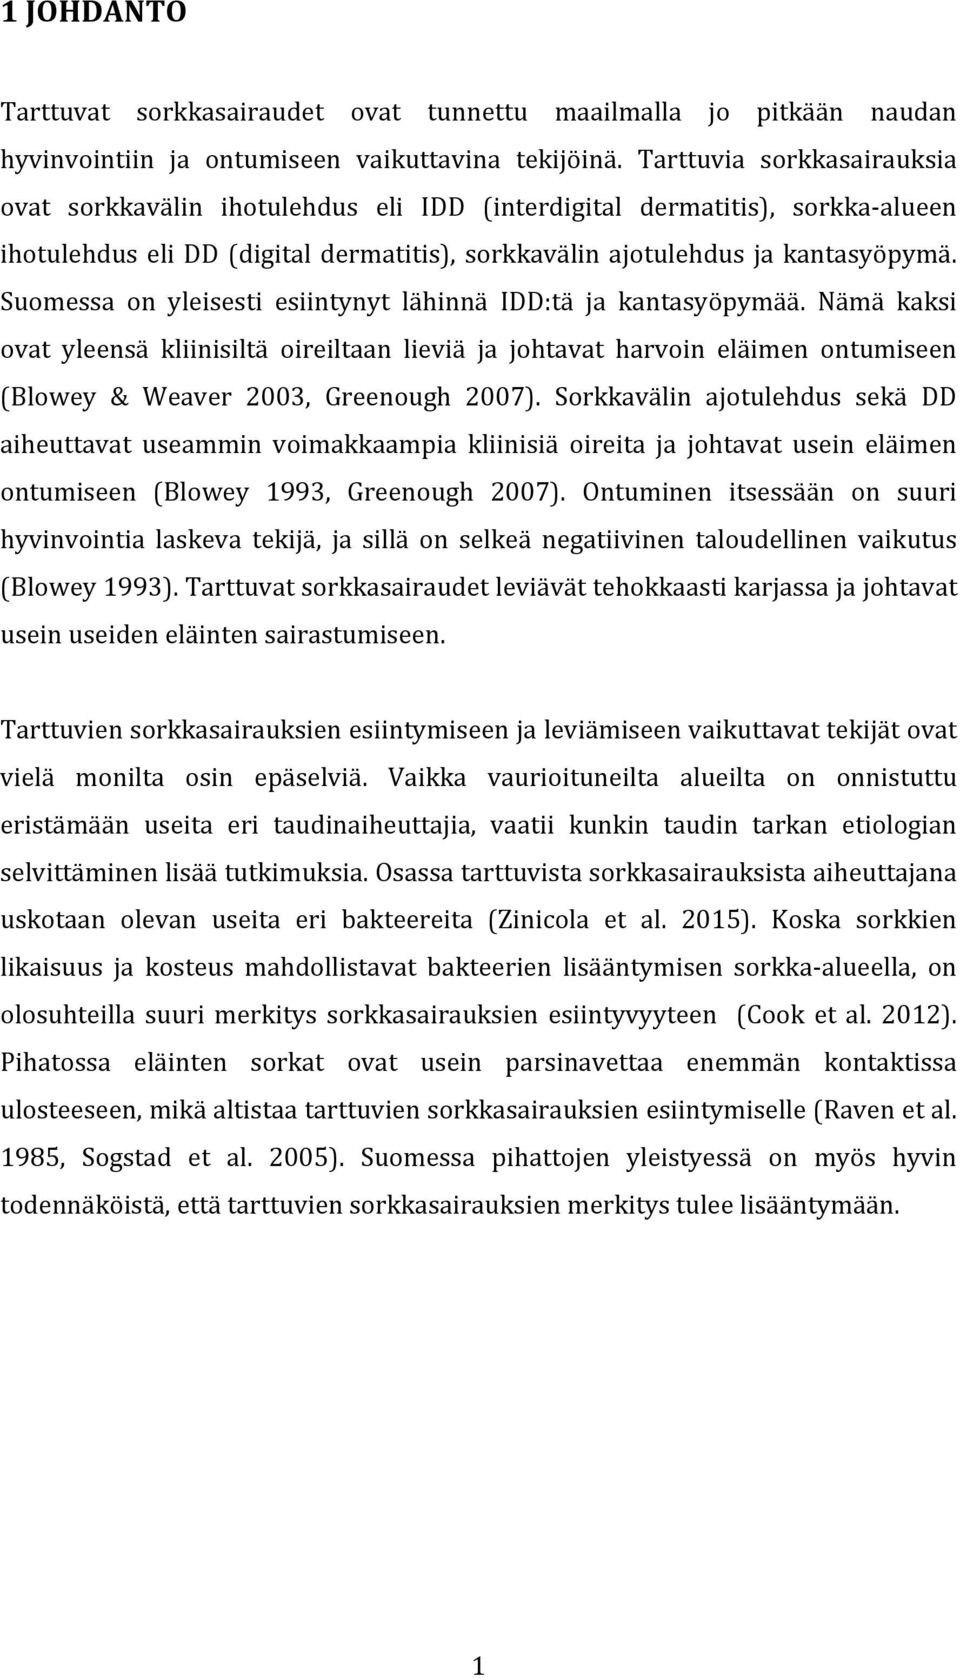 Suomessa on yleisesti esiintynyt lähinnä IDD:tä ja kantasyöpymää. Nämä kaksi ovat yleensä kliinisiltä oireiltaan lieviä ja johtavat harvoin eläimen ontumiseen (Blowey & Weaver 2003, Greenough 2007).